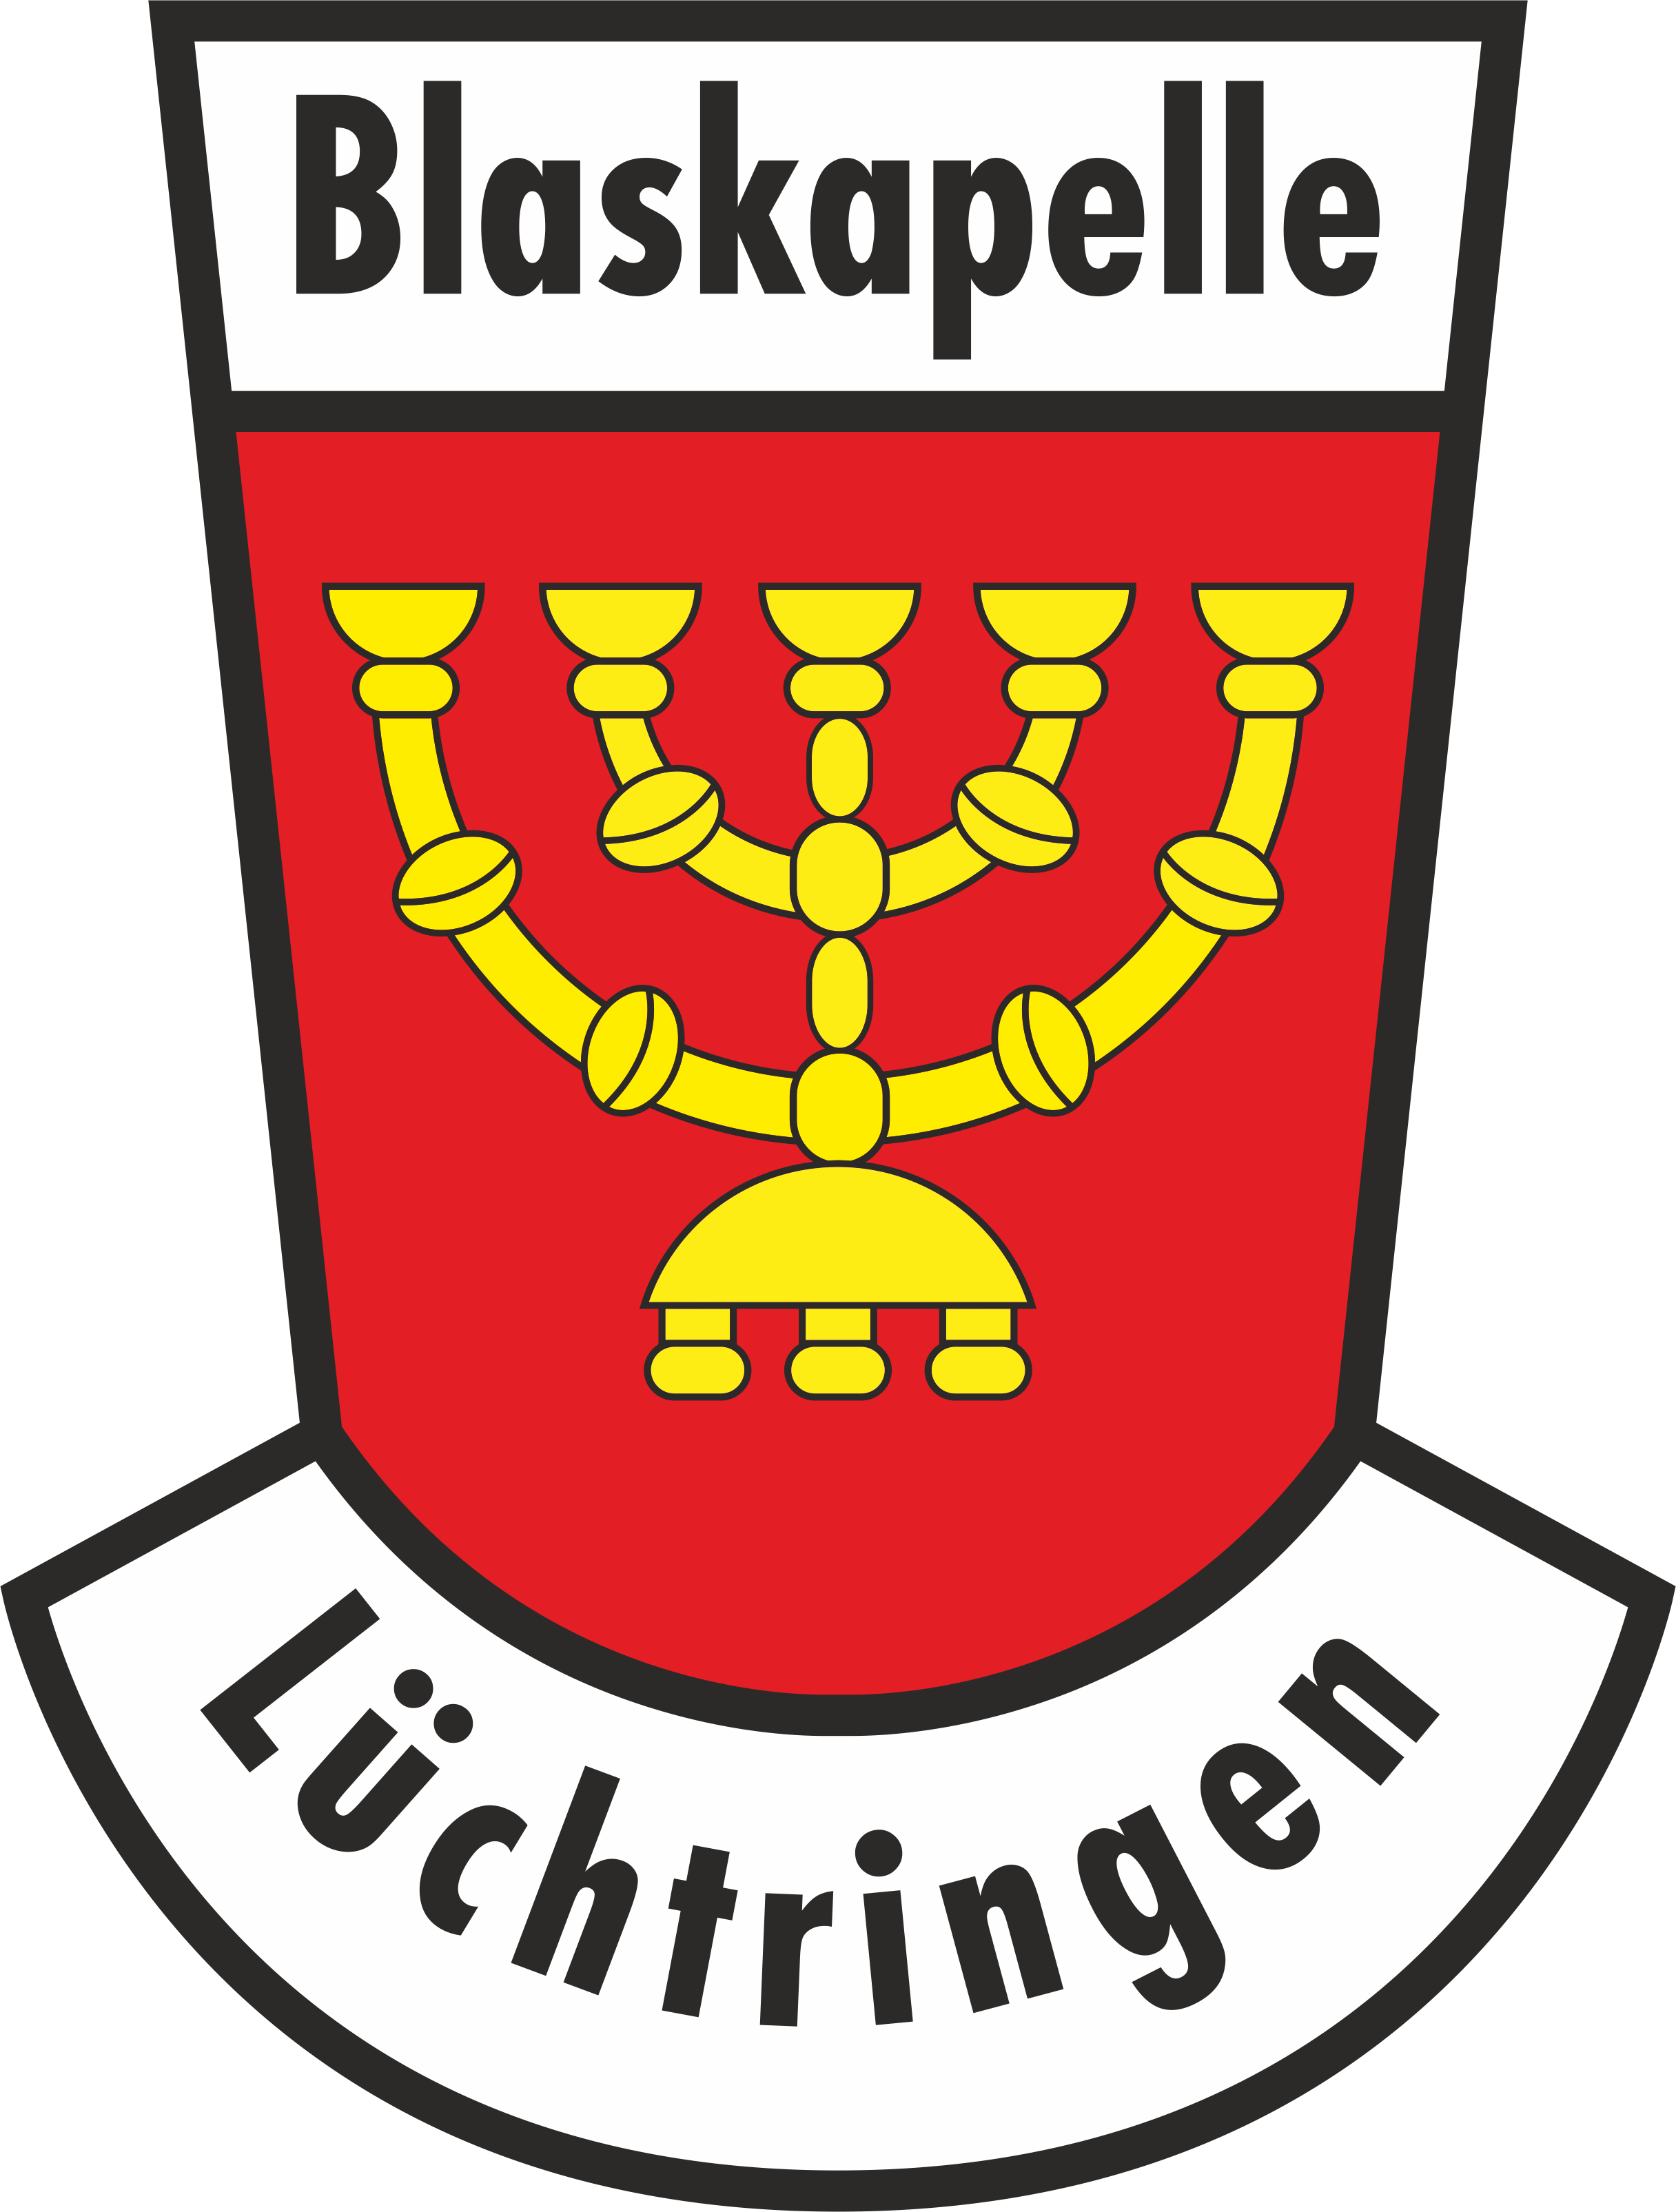 Blaskapelle Lüchtringen logo